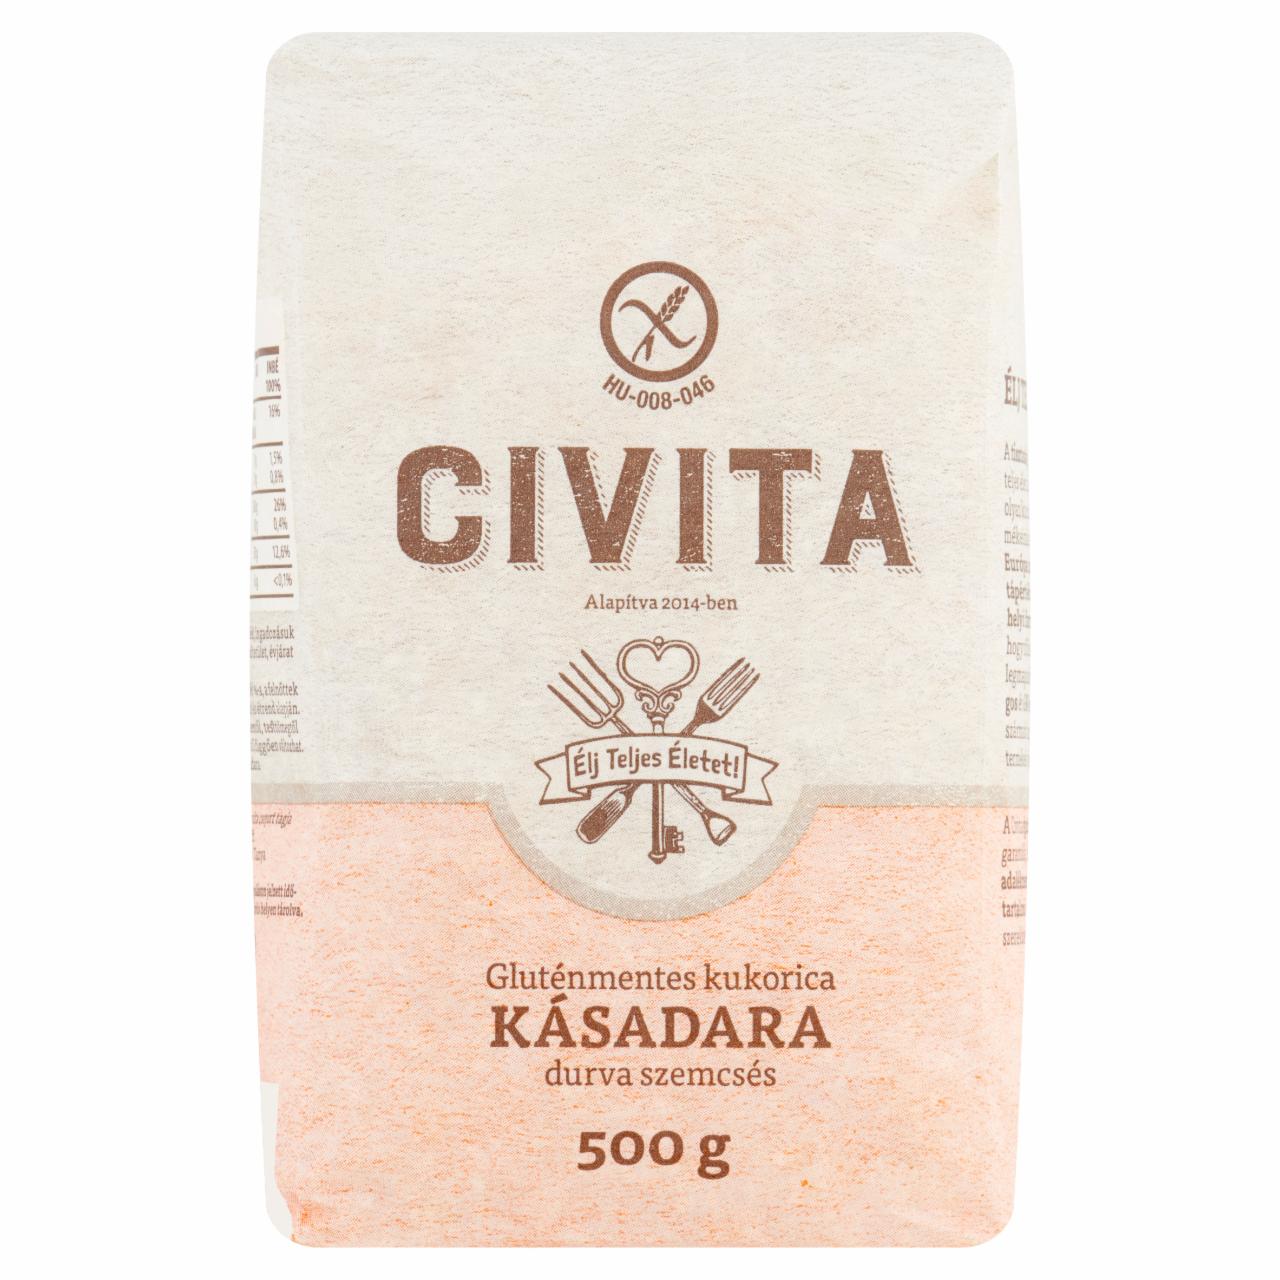 Képek - Civita gluténmentes durva szemcsés kukorica kásadara 500 g